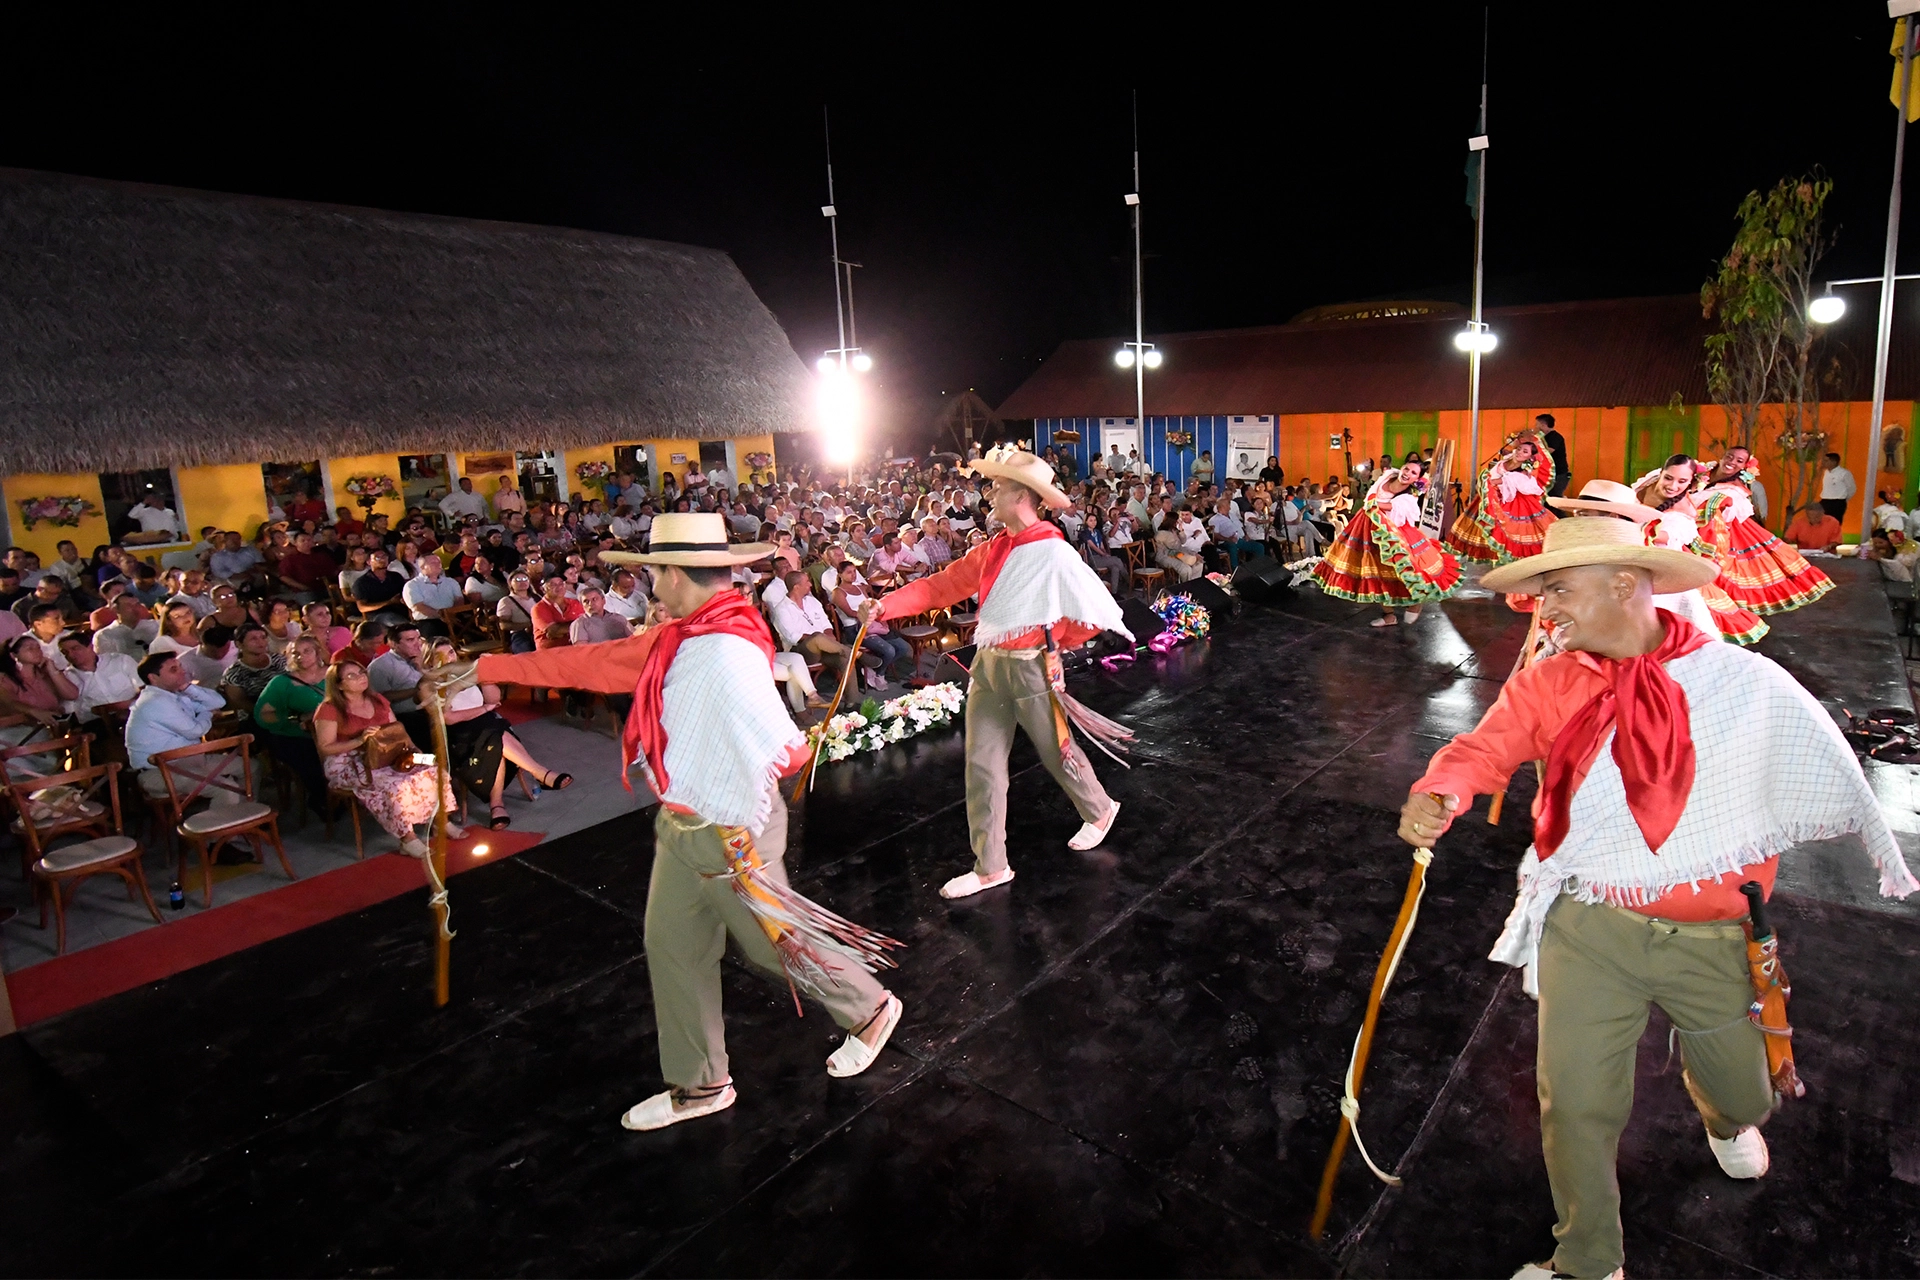 Grupo de danza folclórica bailando en tarima del Pueblito tolimense